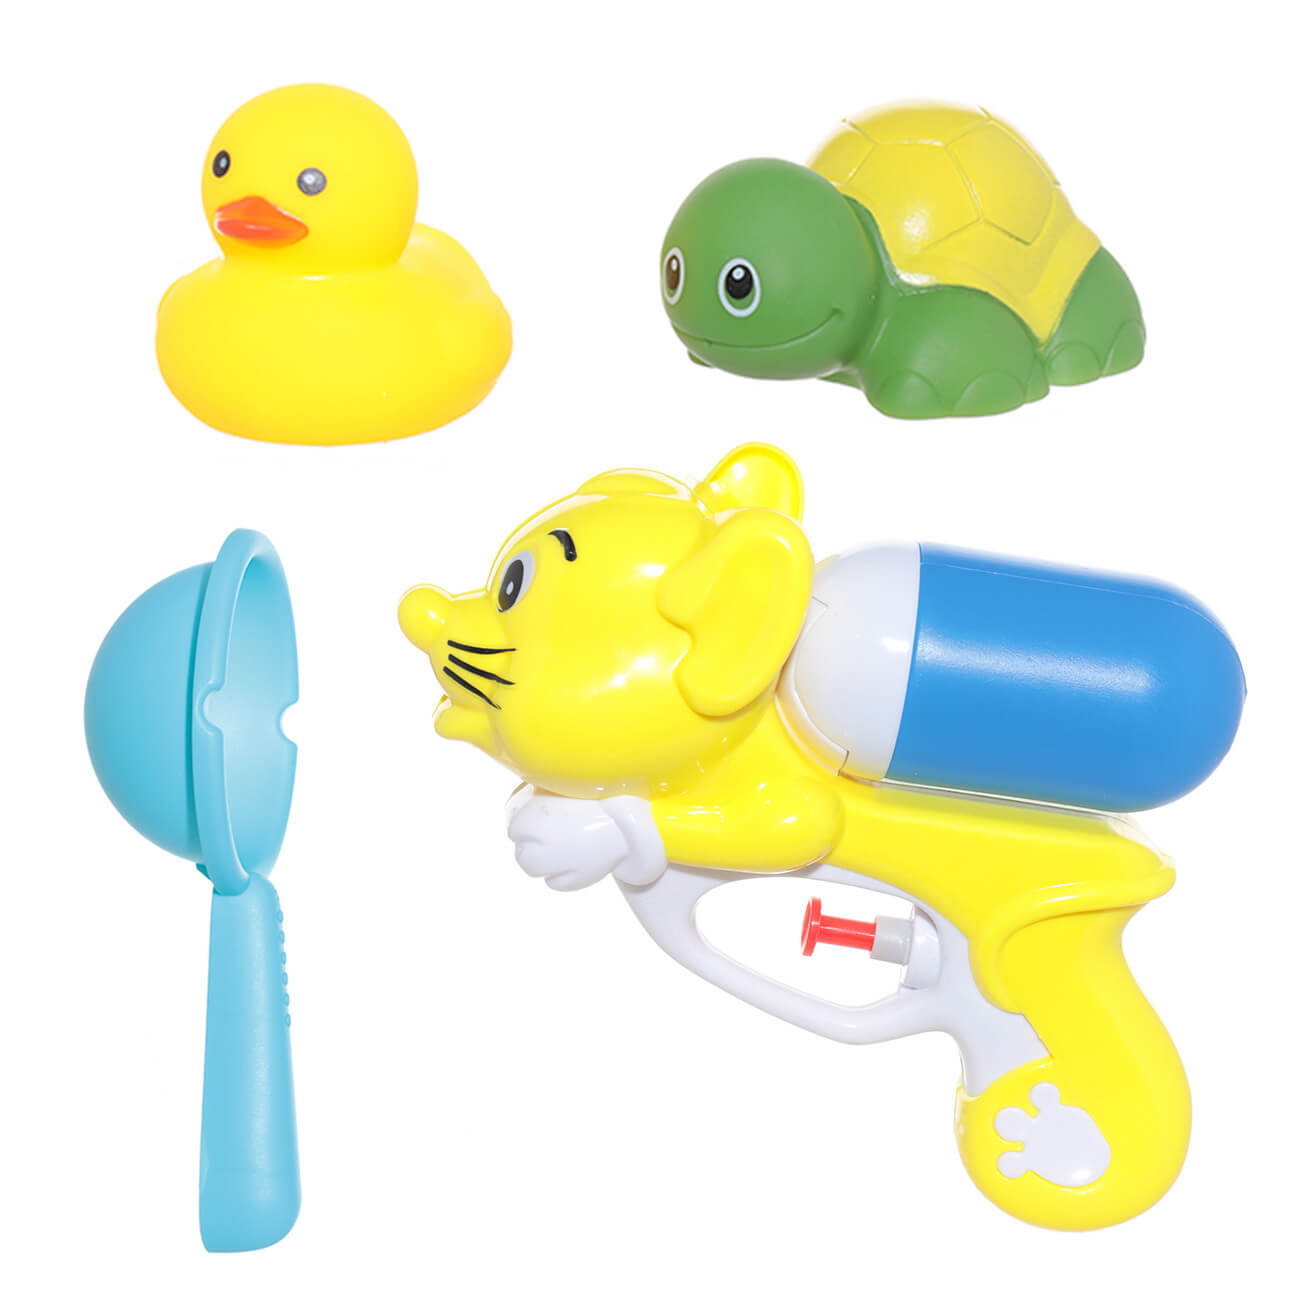 Набор игрушек для купания, 4 пр, водный пистолет/игрушки, резина/пластик, желтый, Duck любимые игрушки раскраска обучалка